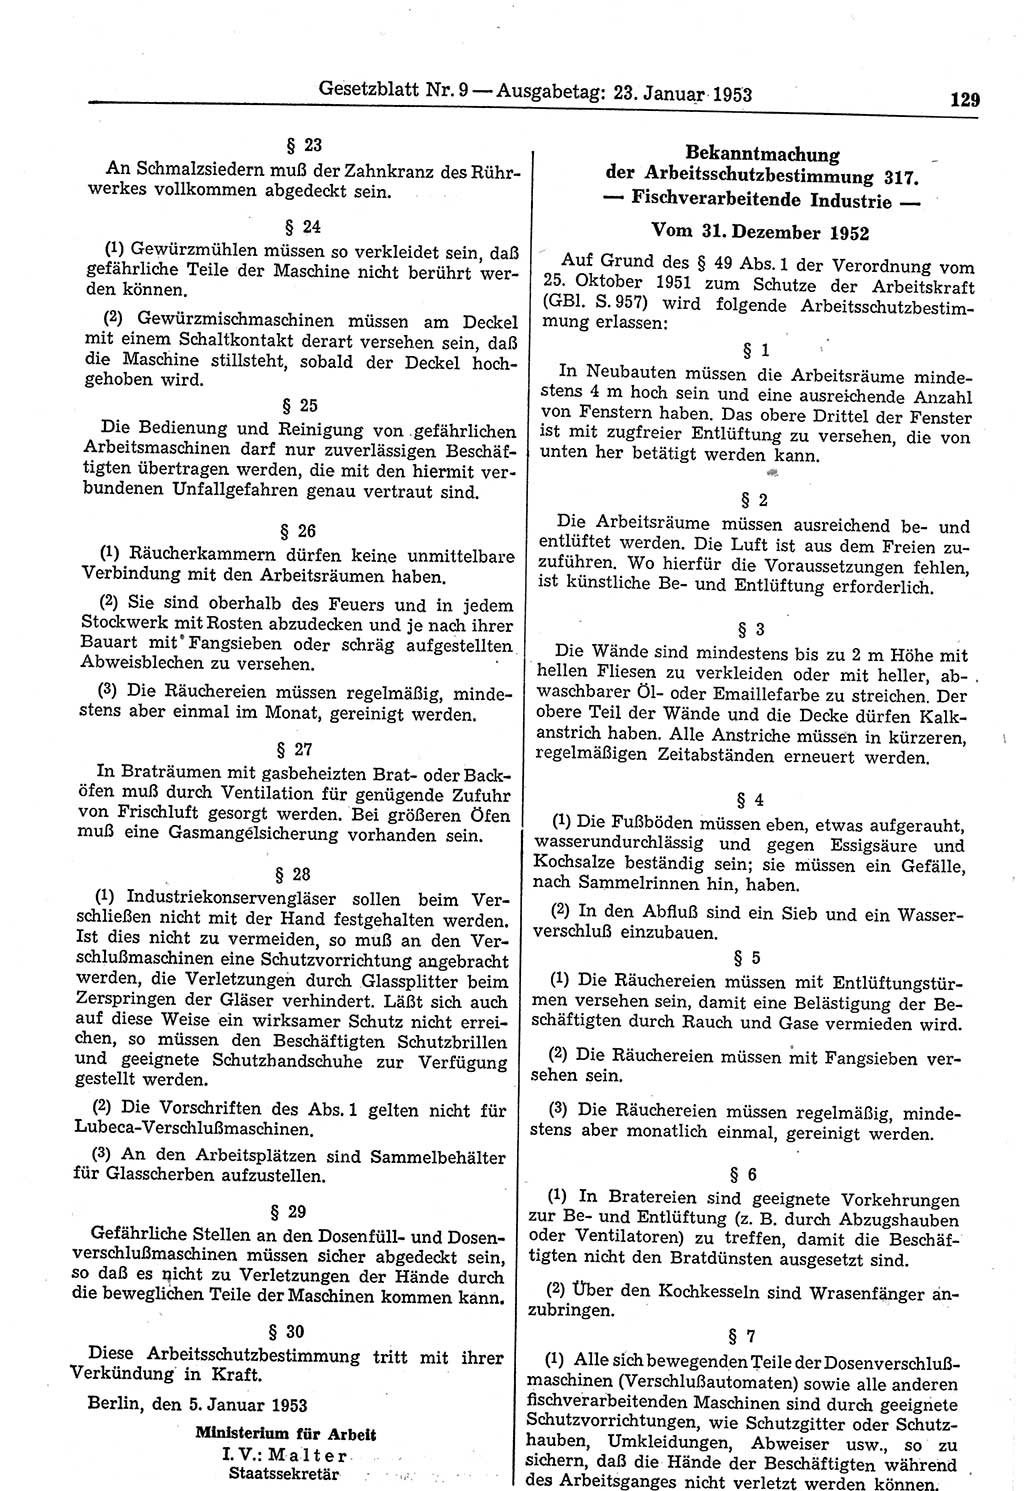 Gesetzblatt (GBl.) der Deutschen Demokratischen Republik (DDR) 1953, Seite 129 (GBl. DDR 1953, S. 129)